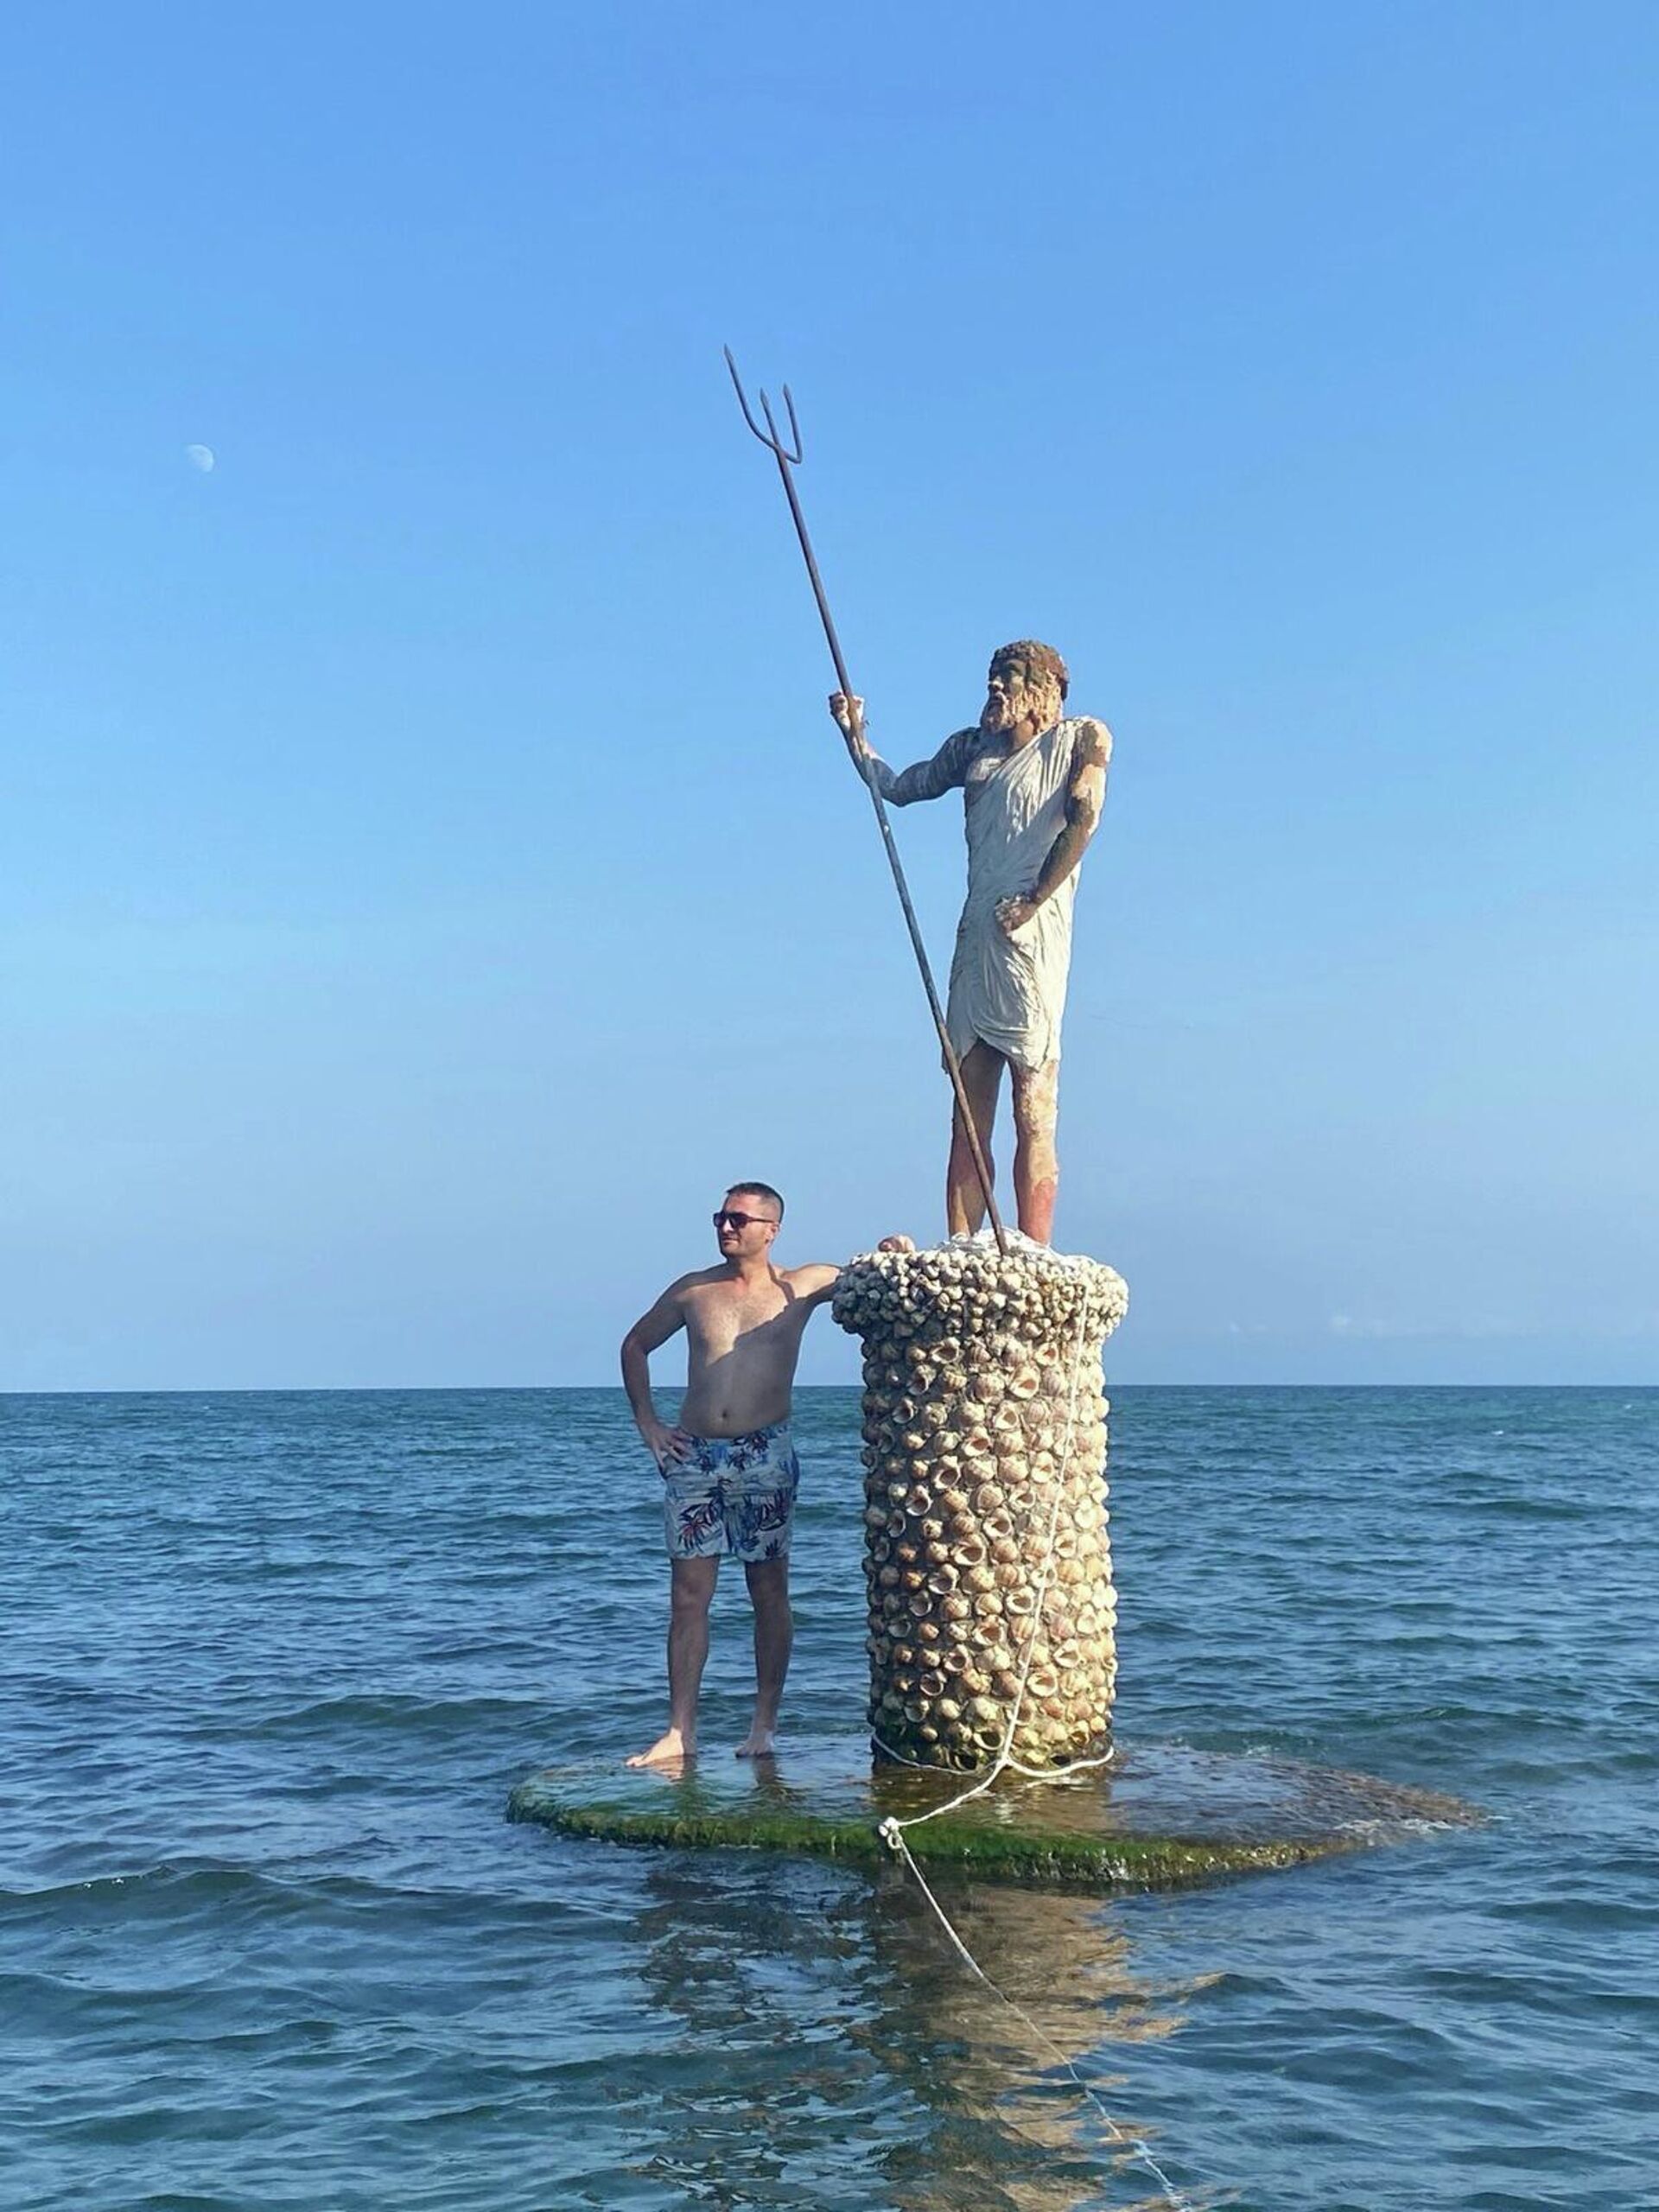 Sinop'ta heykeltıraş Kaya'nın yaptığı, deniz tanrısı Poseidon'u temsil eden heykel, sosyal medyanın hedefi oldu. - Sputnik Türkiye, 1920, 24.01.2022